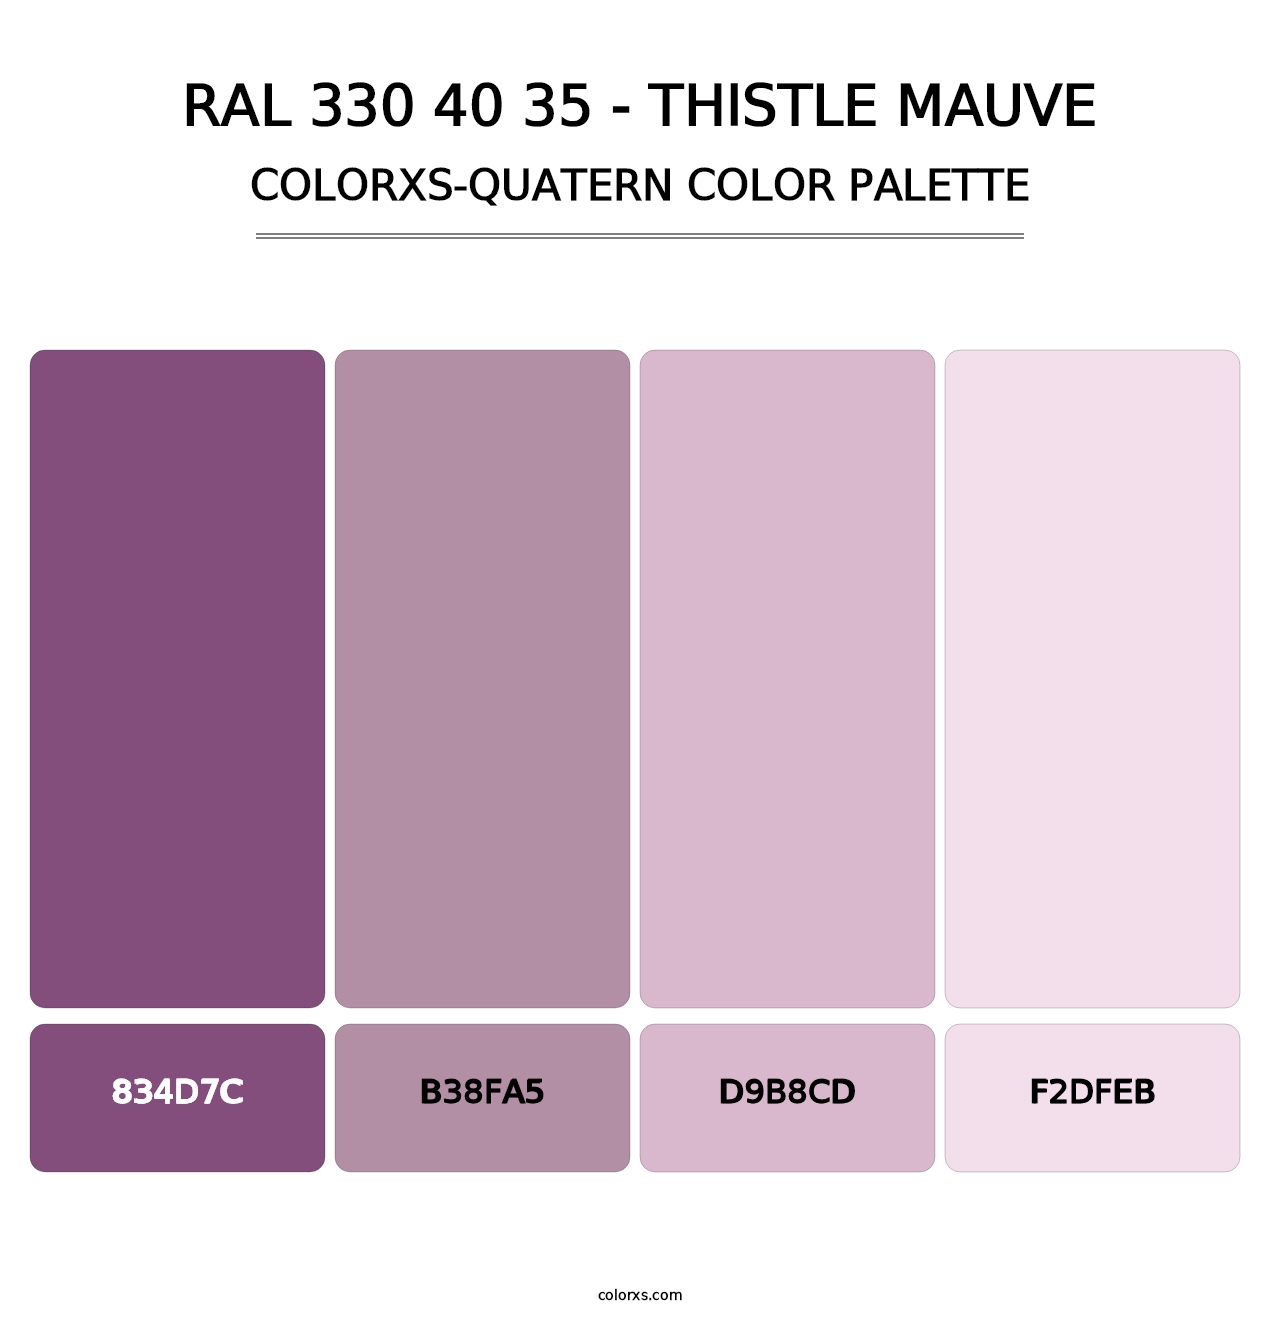 RAL 330 40 35 - Thistle Mauve - Colorxs Quatern Palette